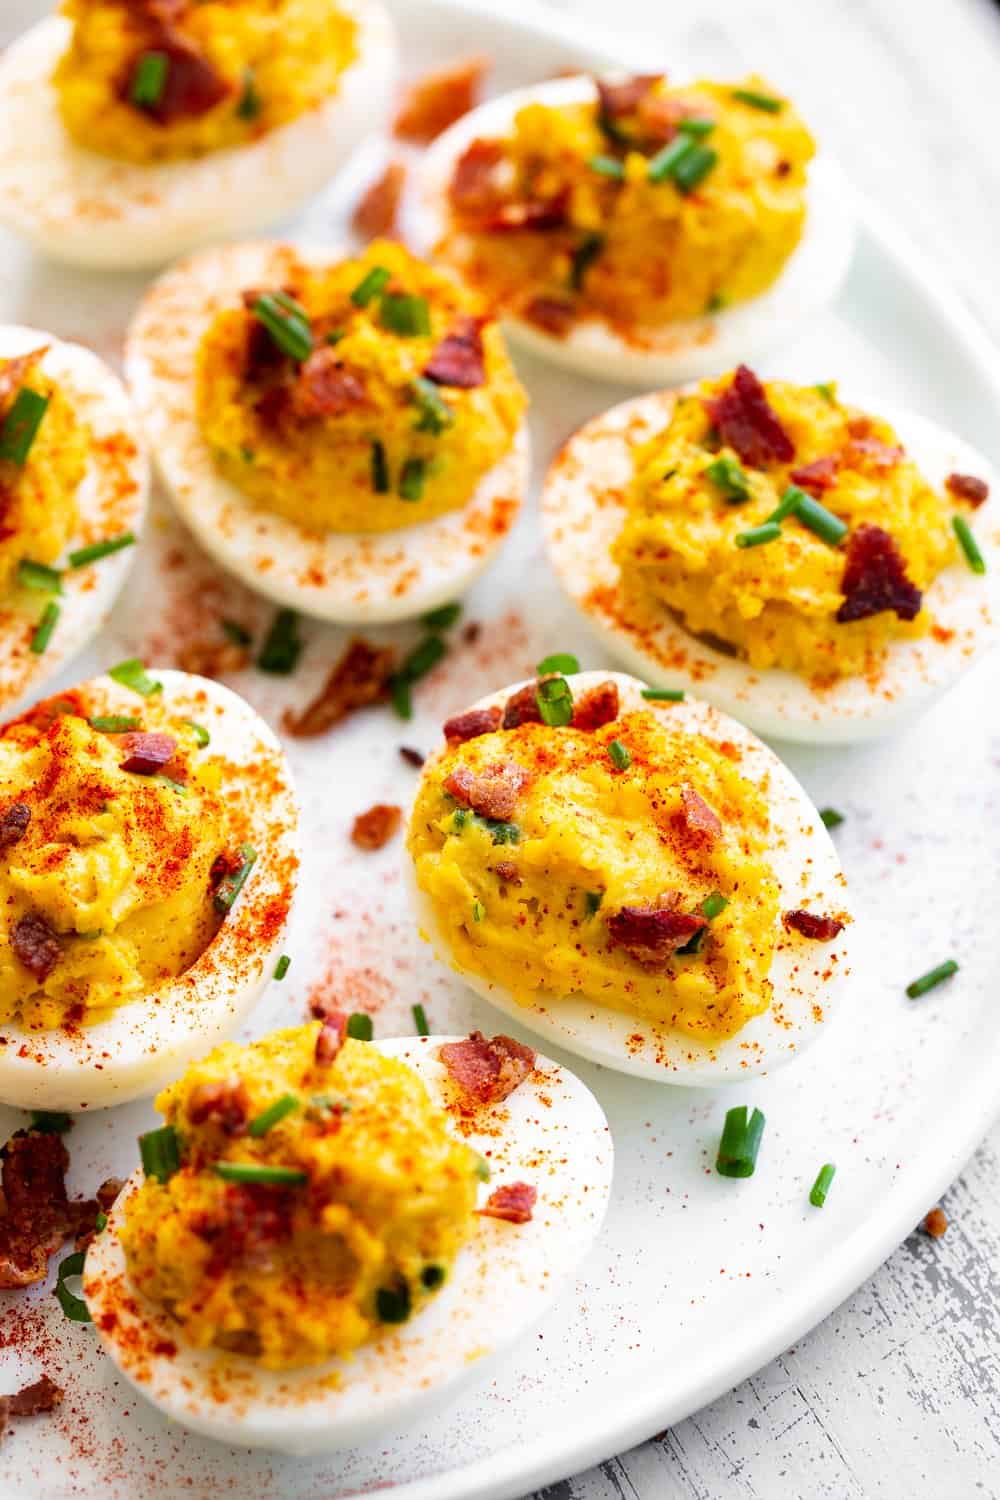 https://www.paleorunningmomma.com/wp-content/uploads/2015/06/bacon-deviled-eggs-1.jpg